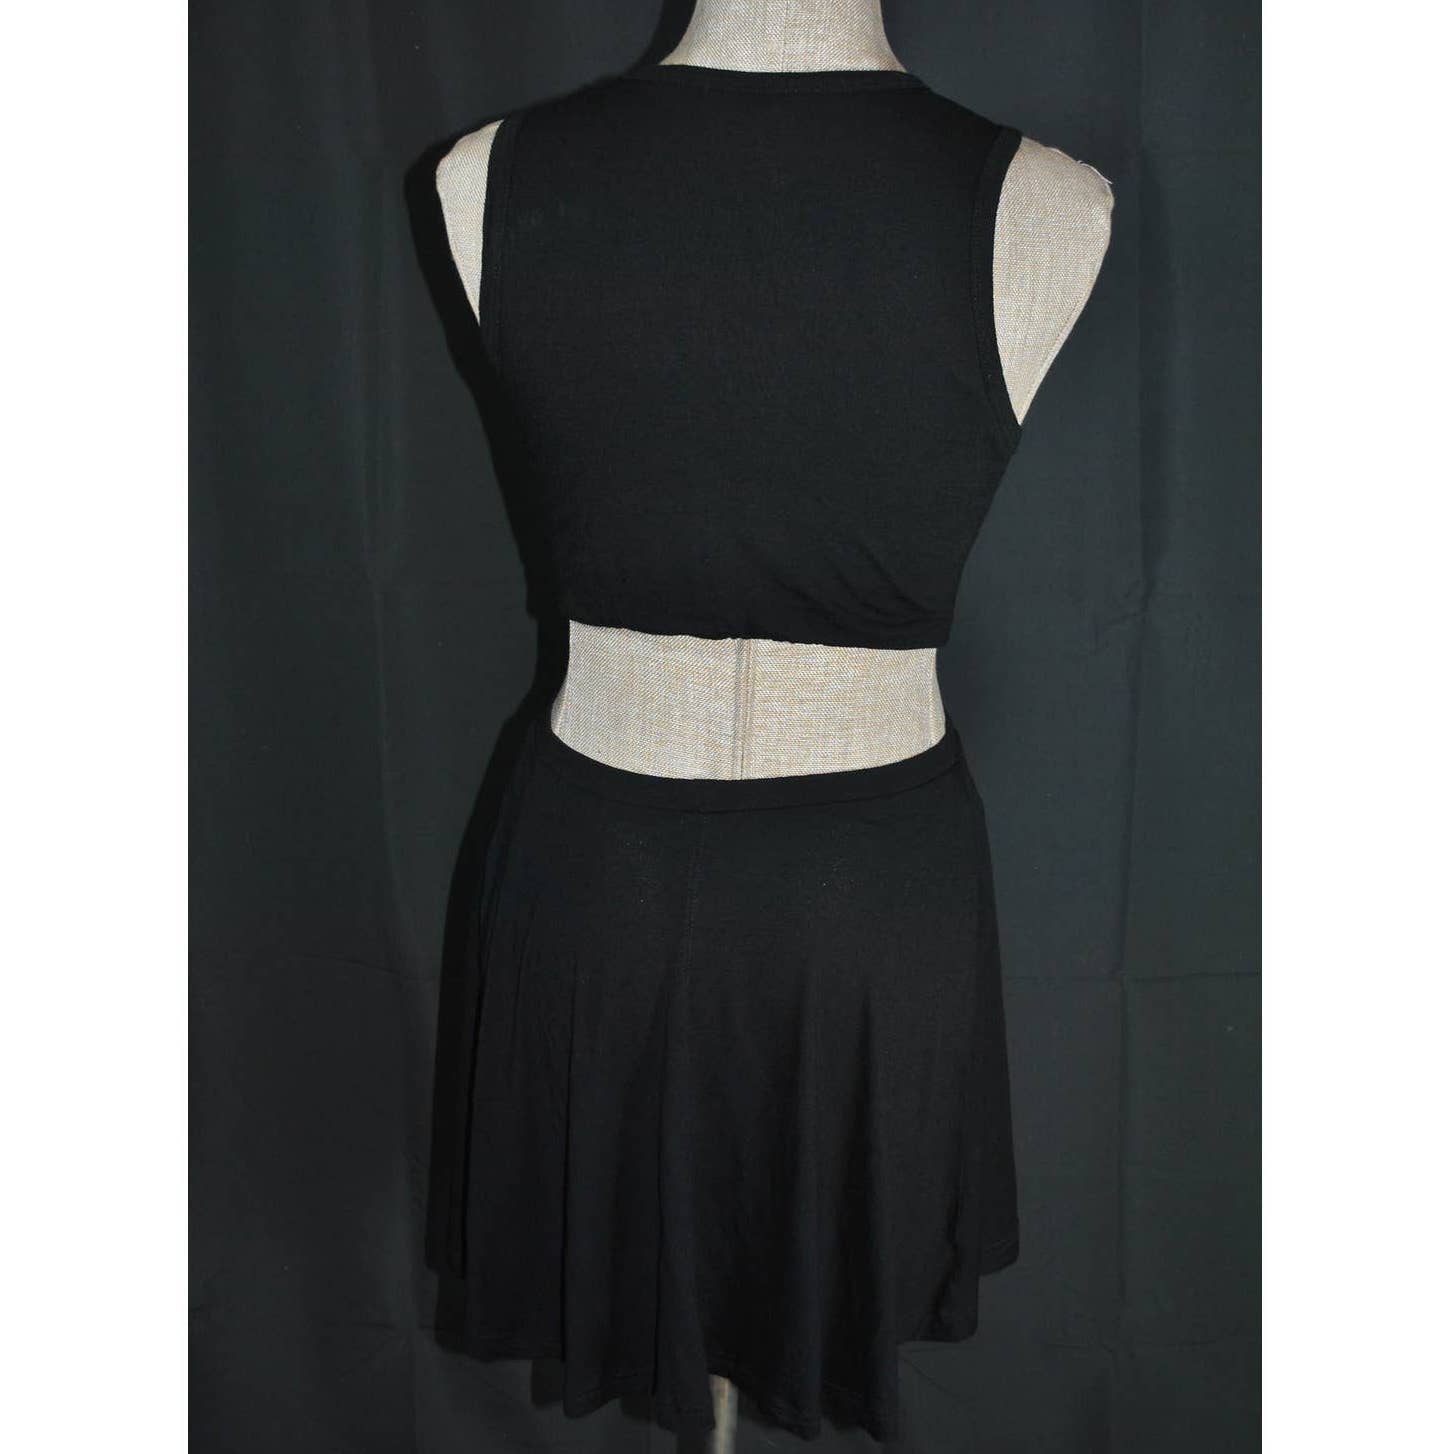 A.L.C. 2014 Black Cutout Tank Dress- S